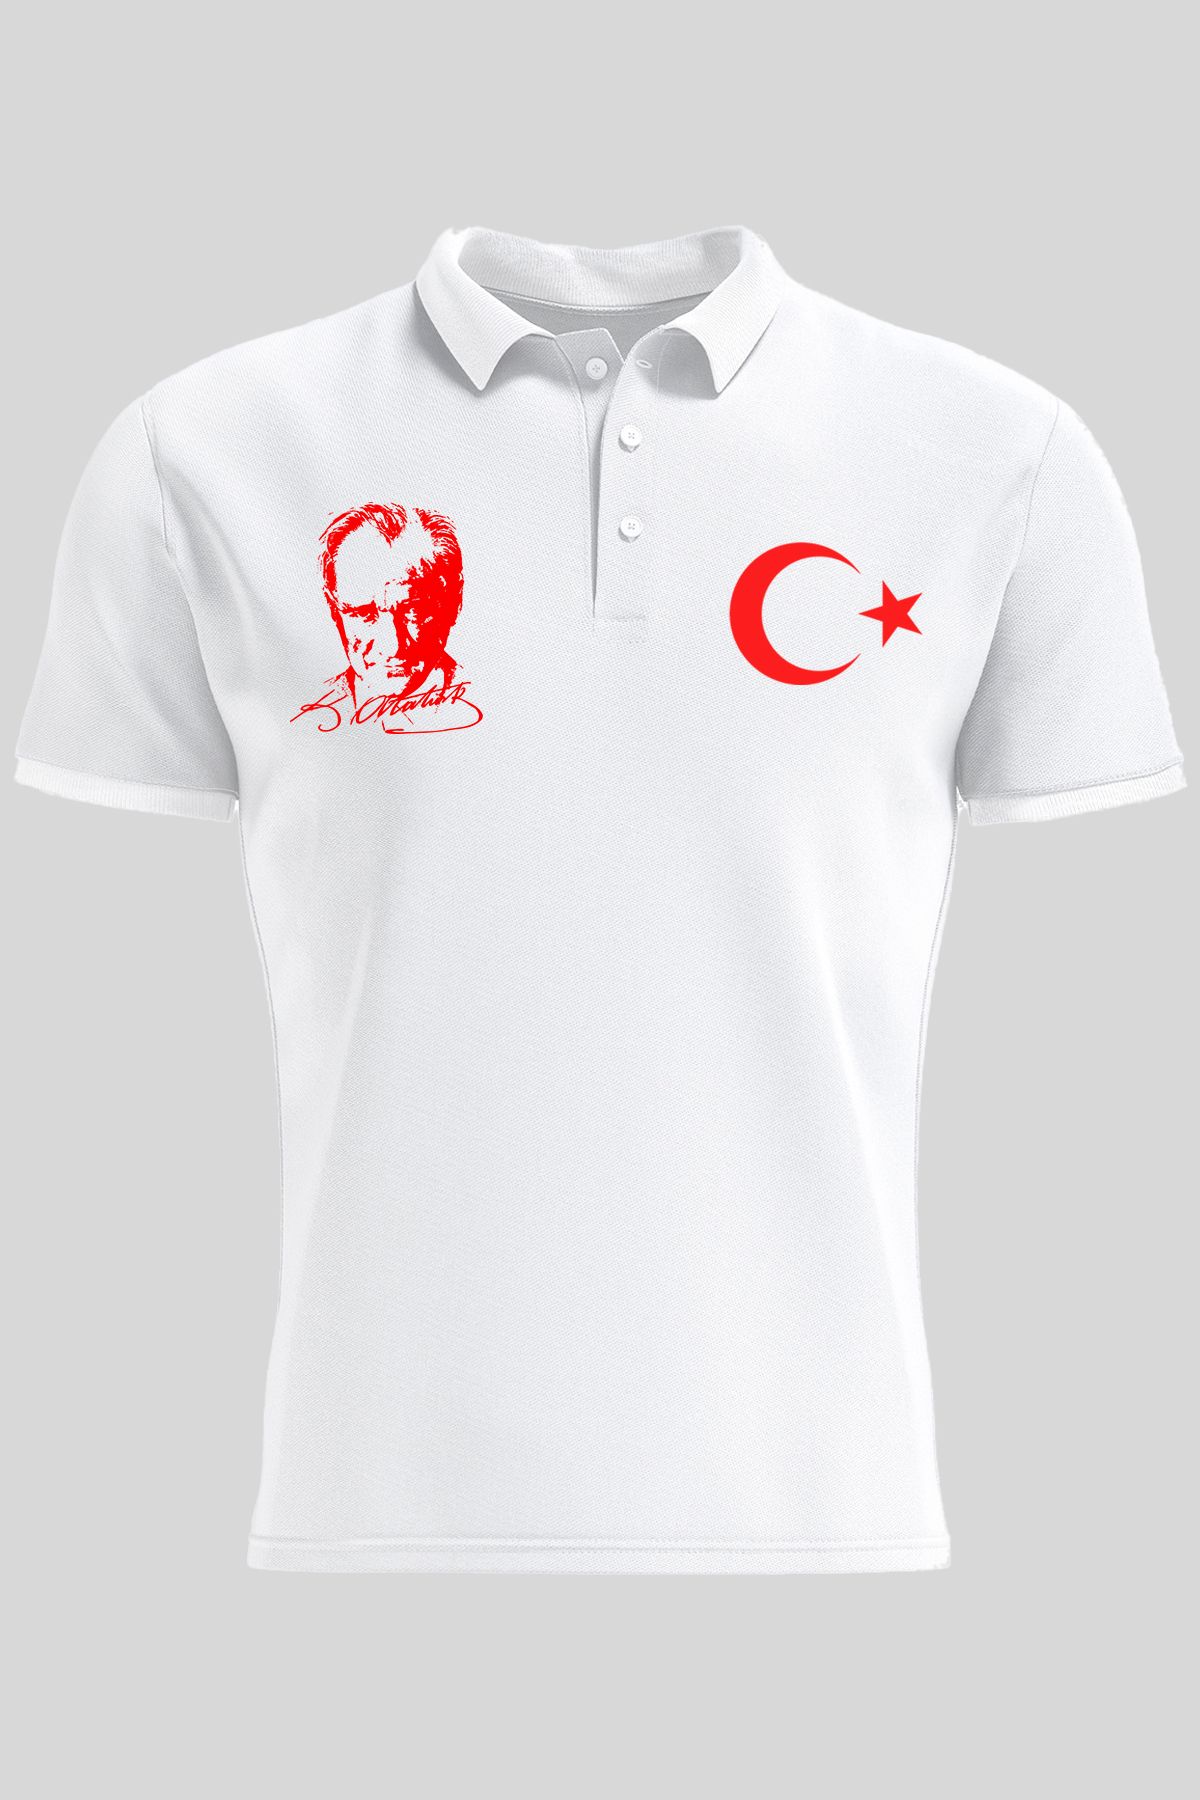 Çapıt Polo Yaka Atatürk ve Ay Yıldızlı Beyaz Kısa Kollu 23 Nisan Tişört